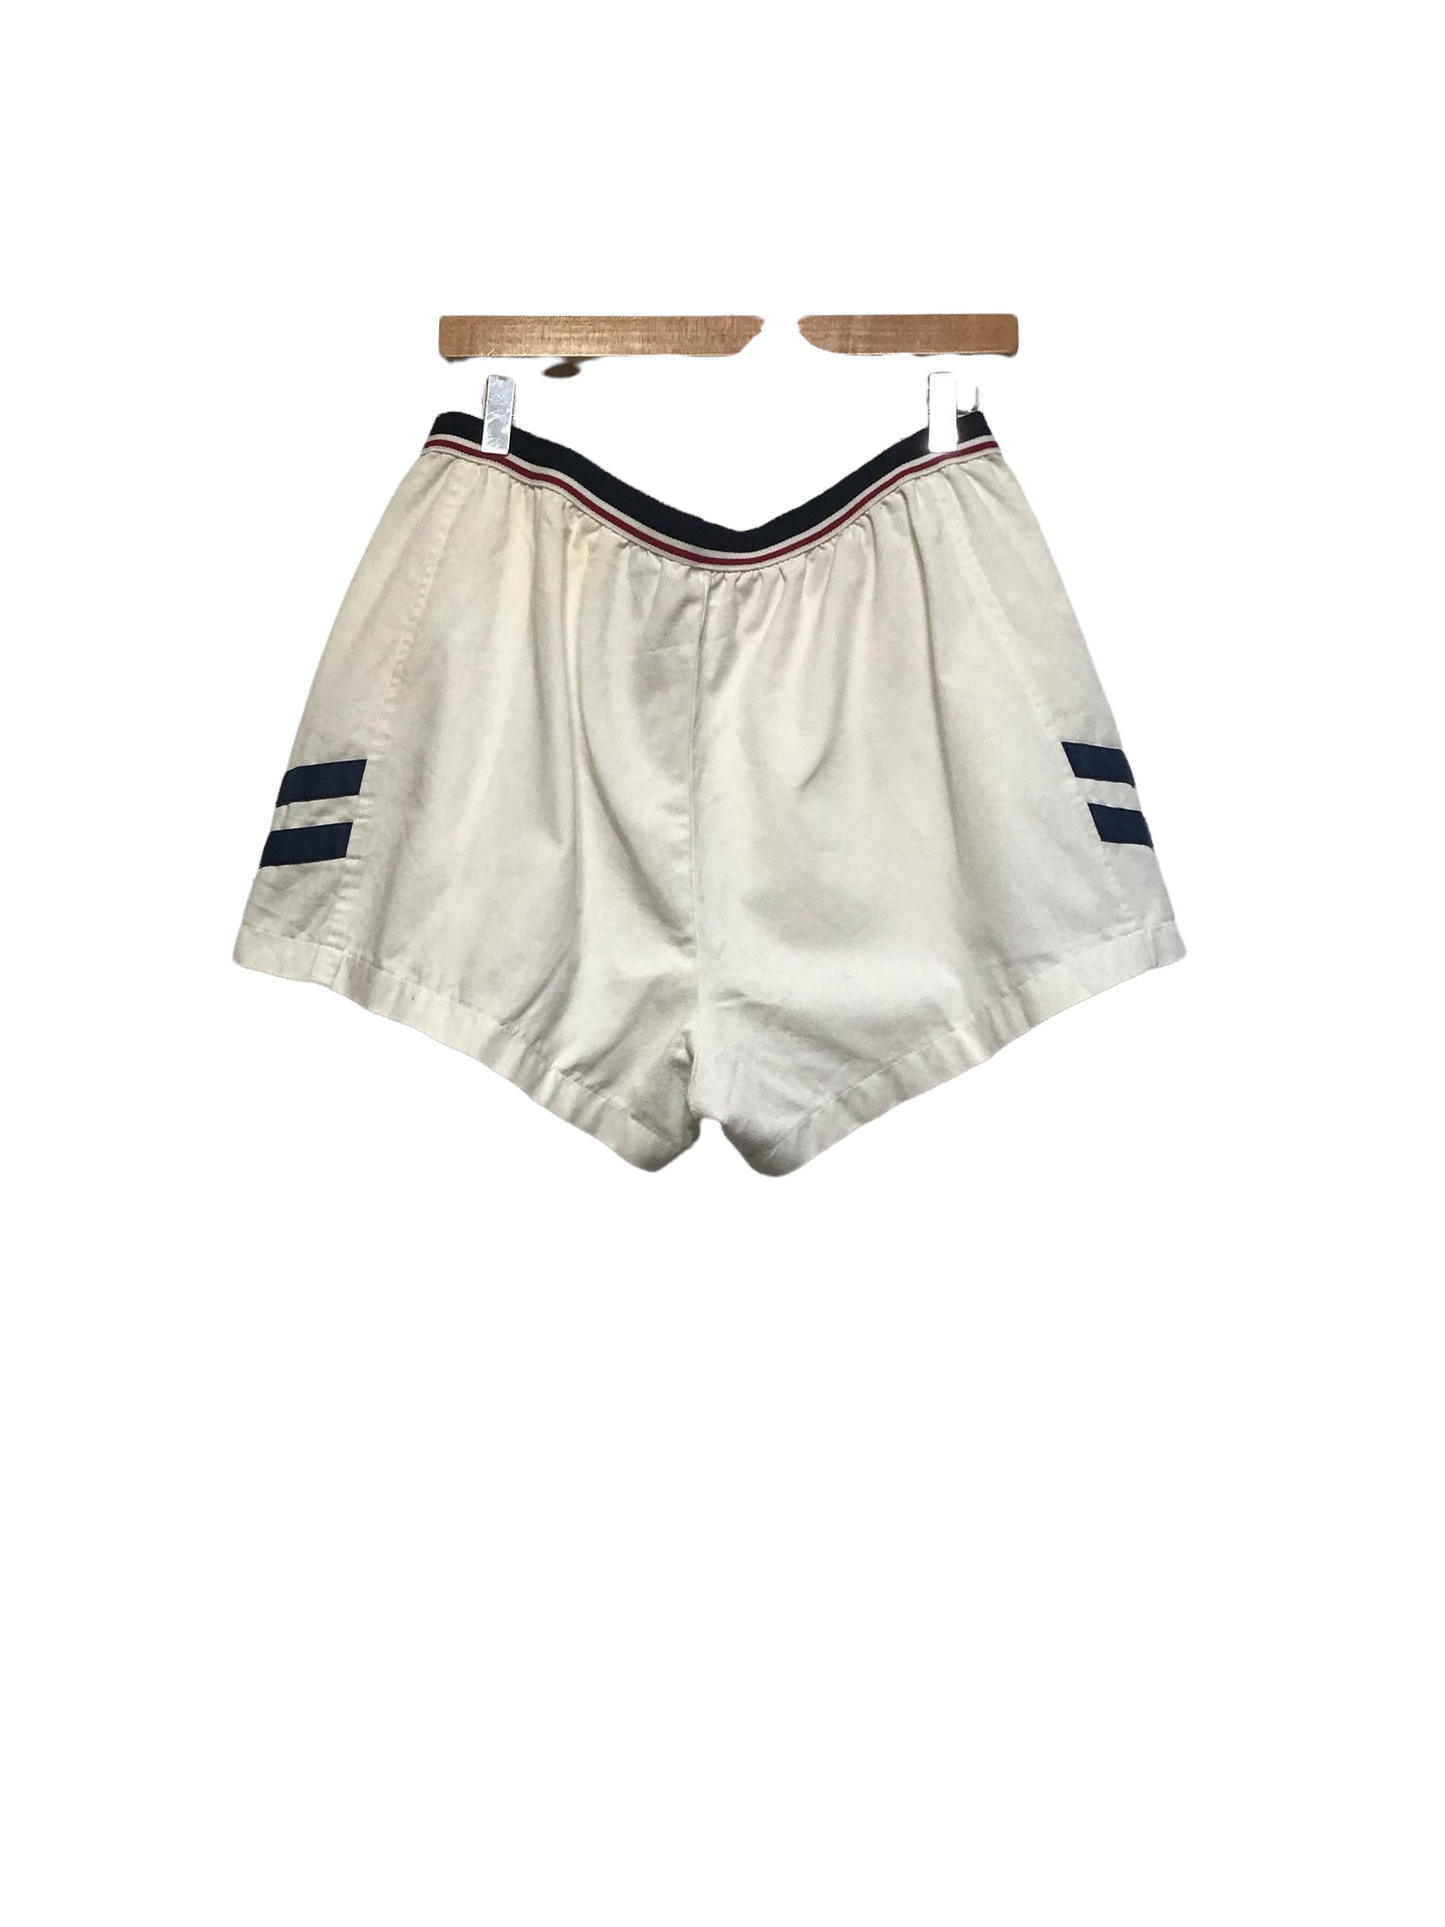 Cotton Sport Shorts (Size L)